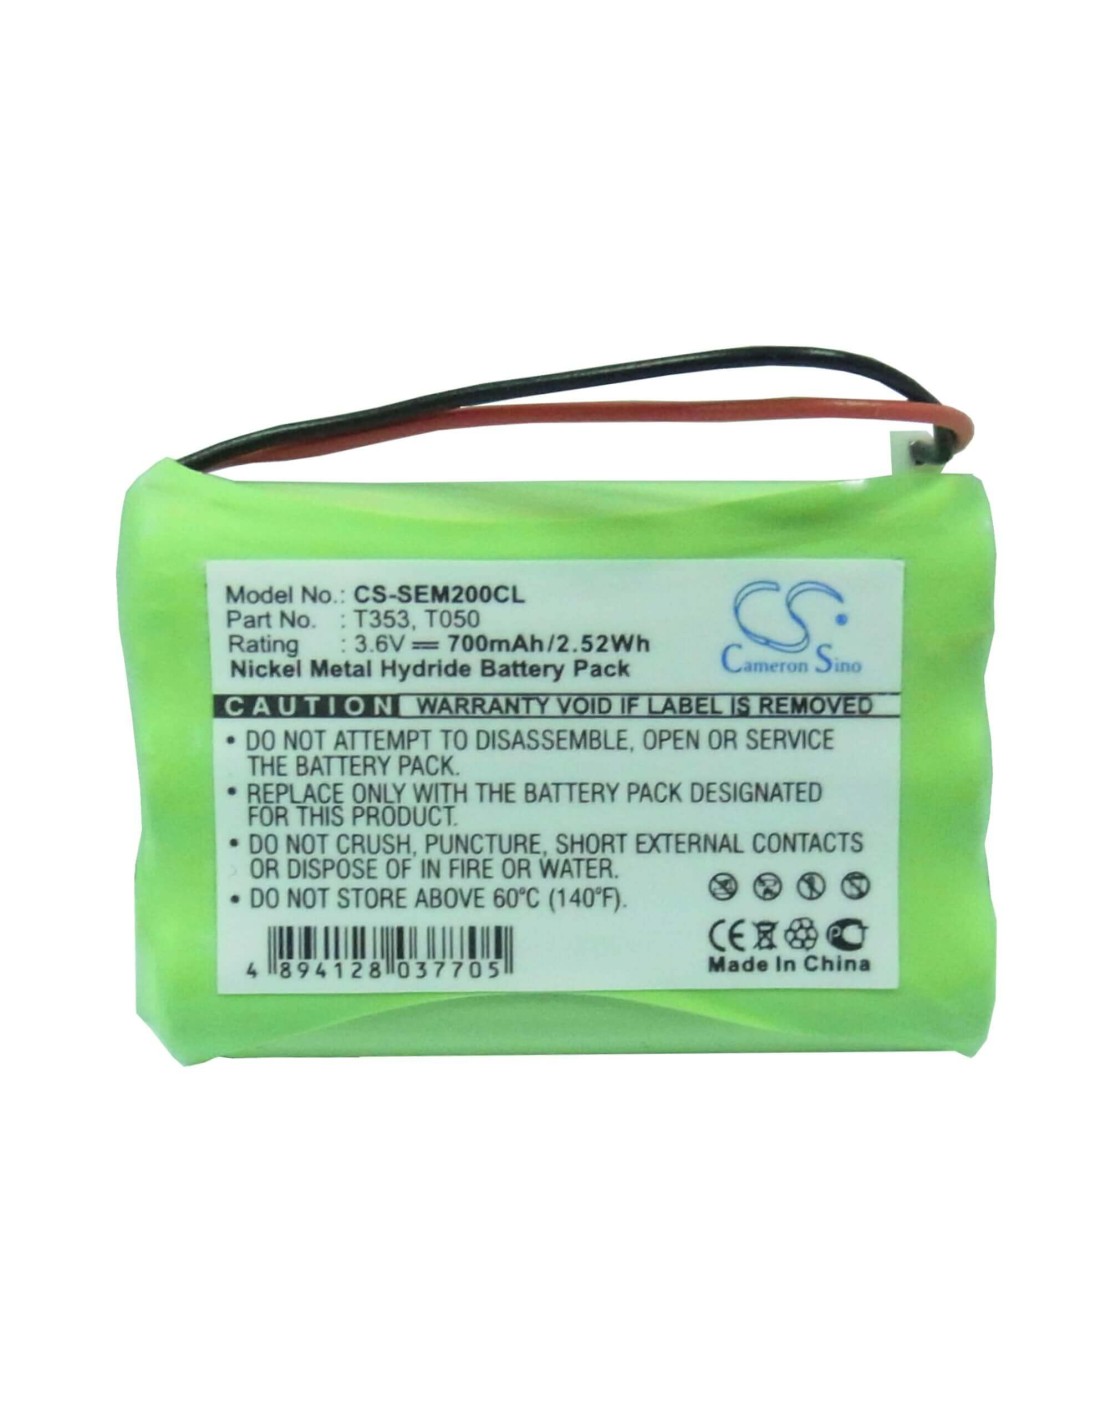 Battery for Sagem, Alize Mistral, Alize Navigateur, 3.6V, 700mAh - 2.52Wh